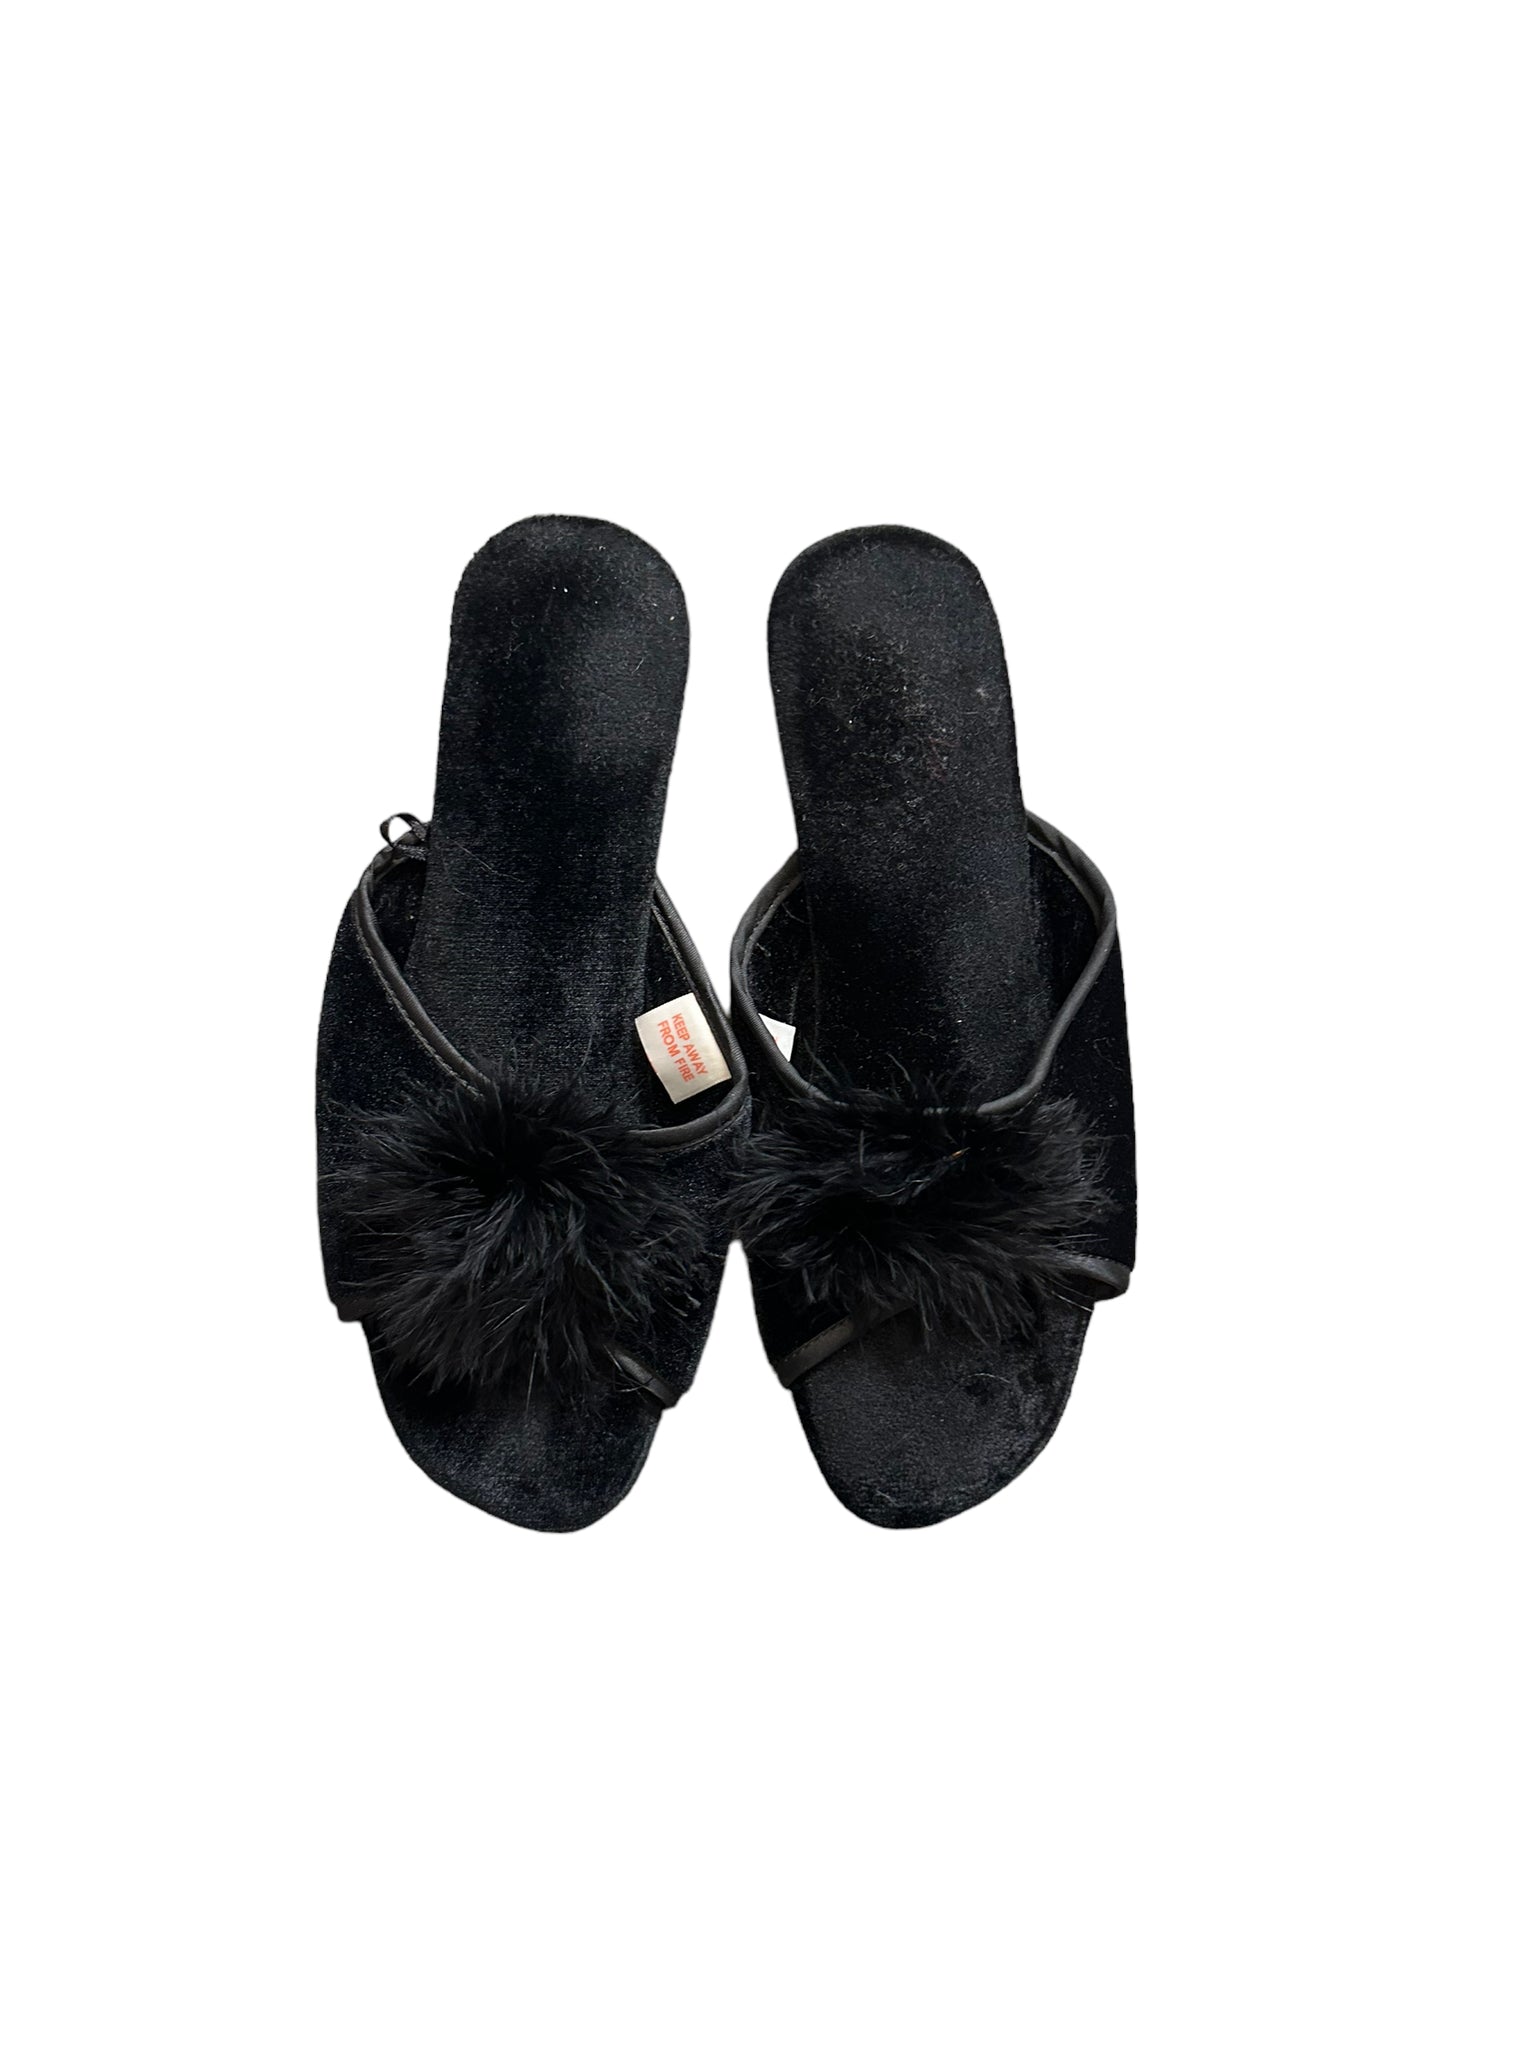 Black Fur Tie Wedges Sandals